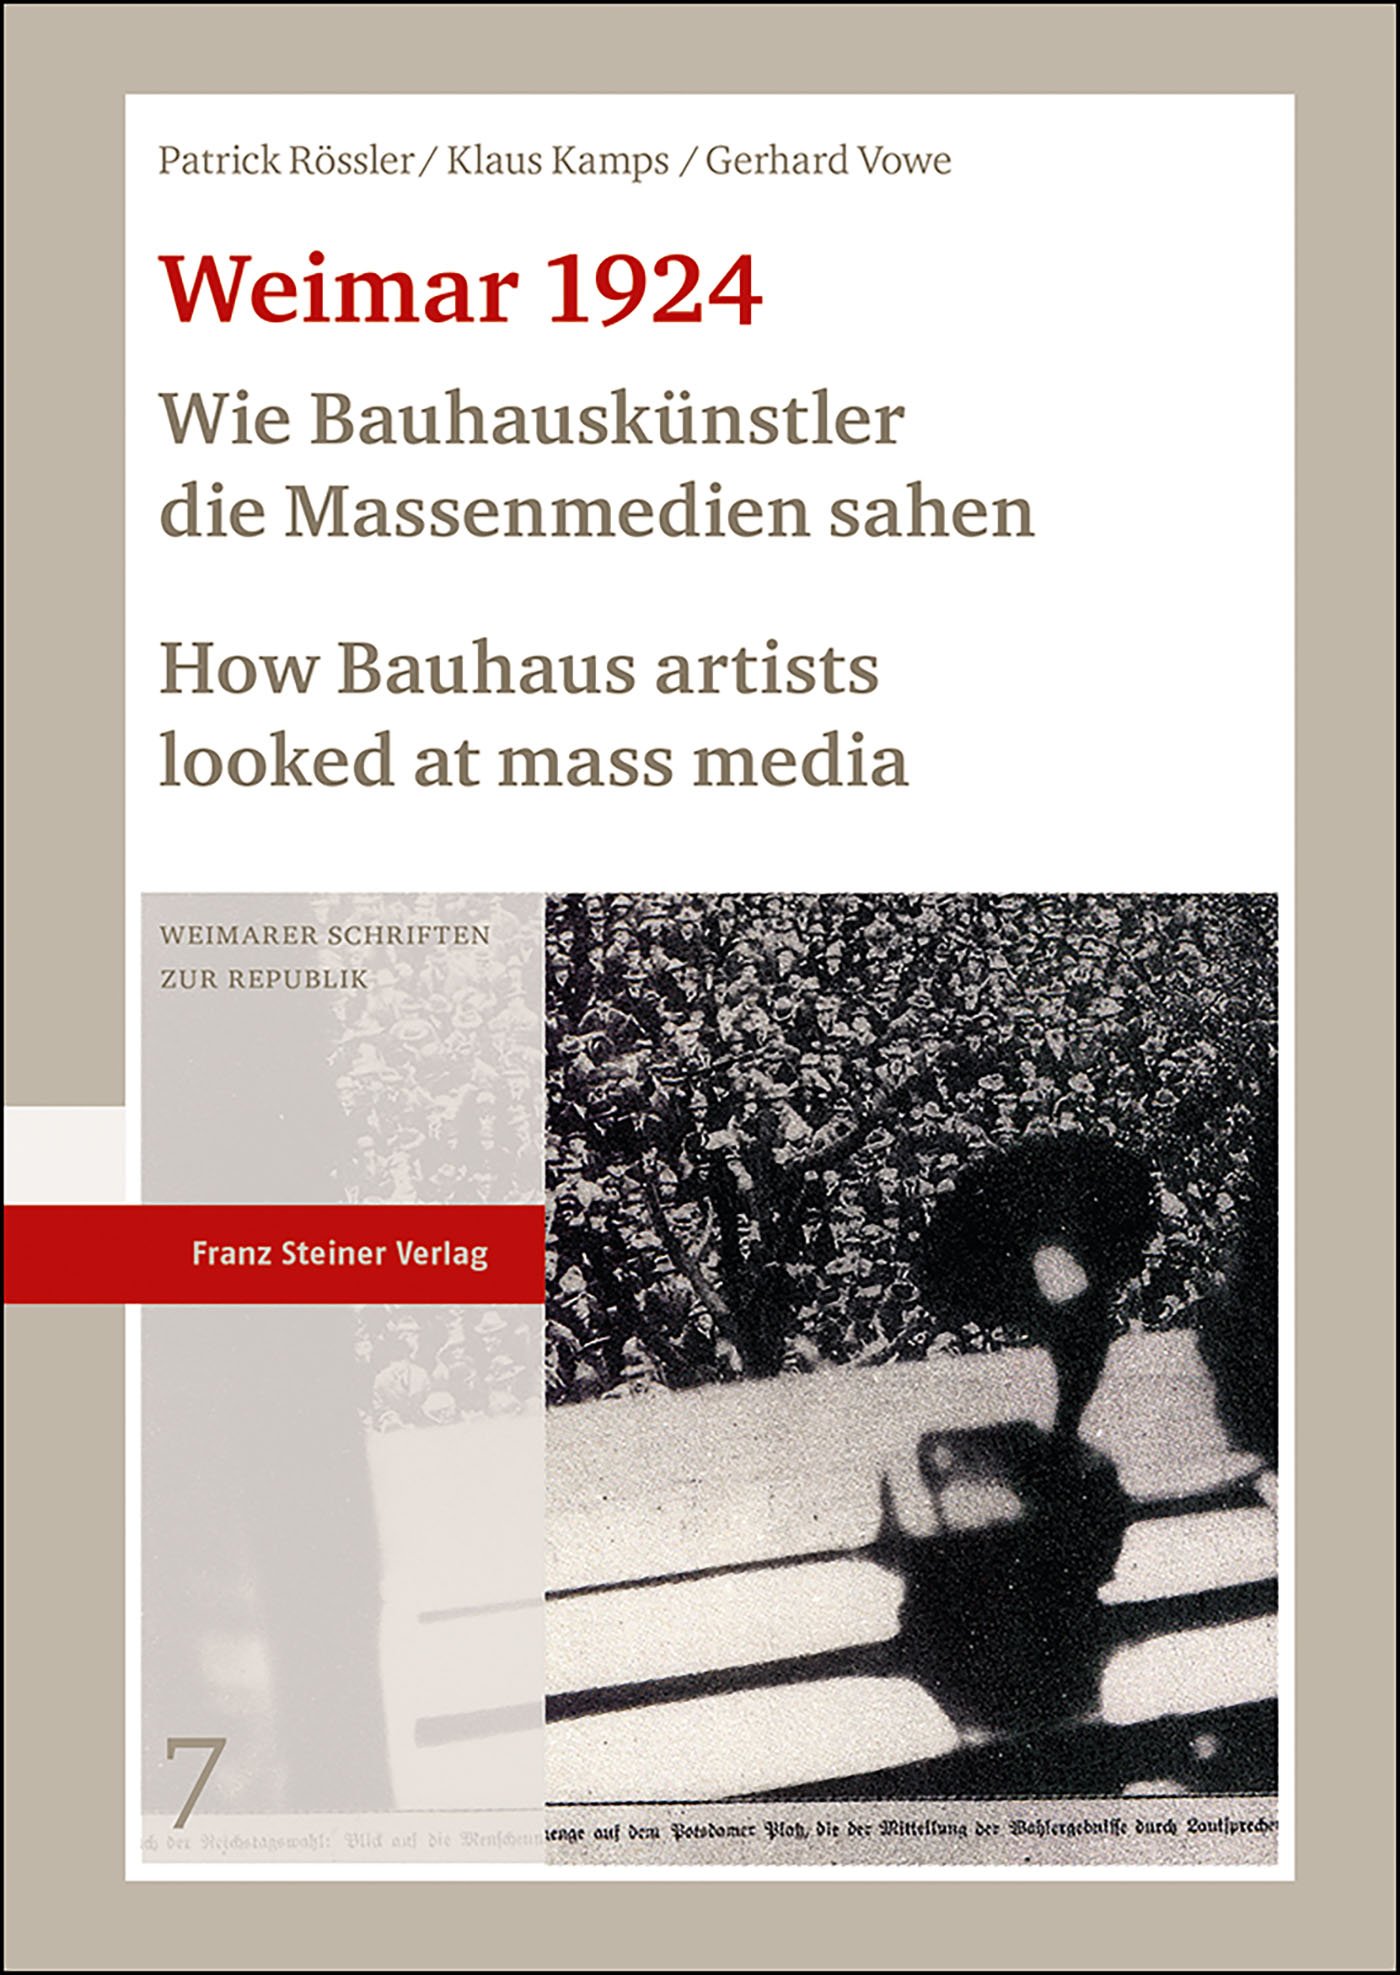 Weimar 1924: Wie Bauhauskünstler die Massenmedien sahen / How Bauhaus artists looked at mass media